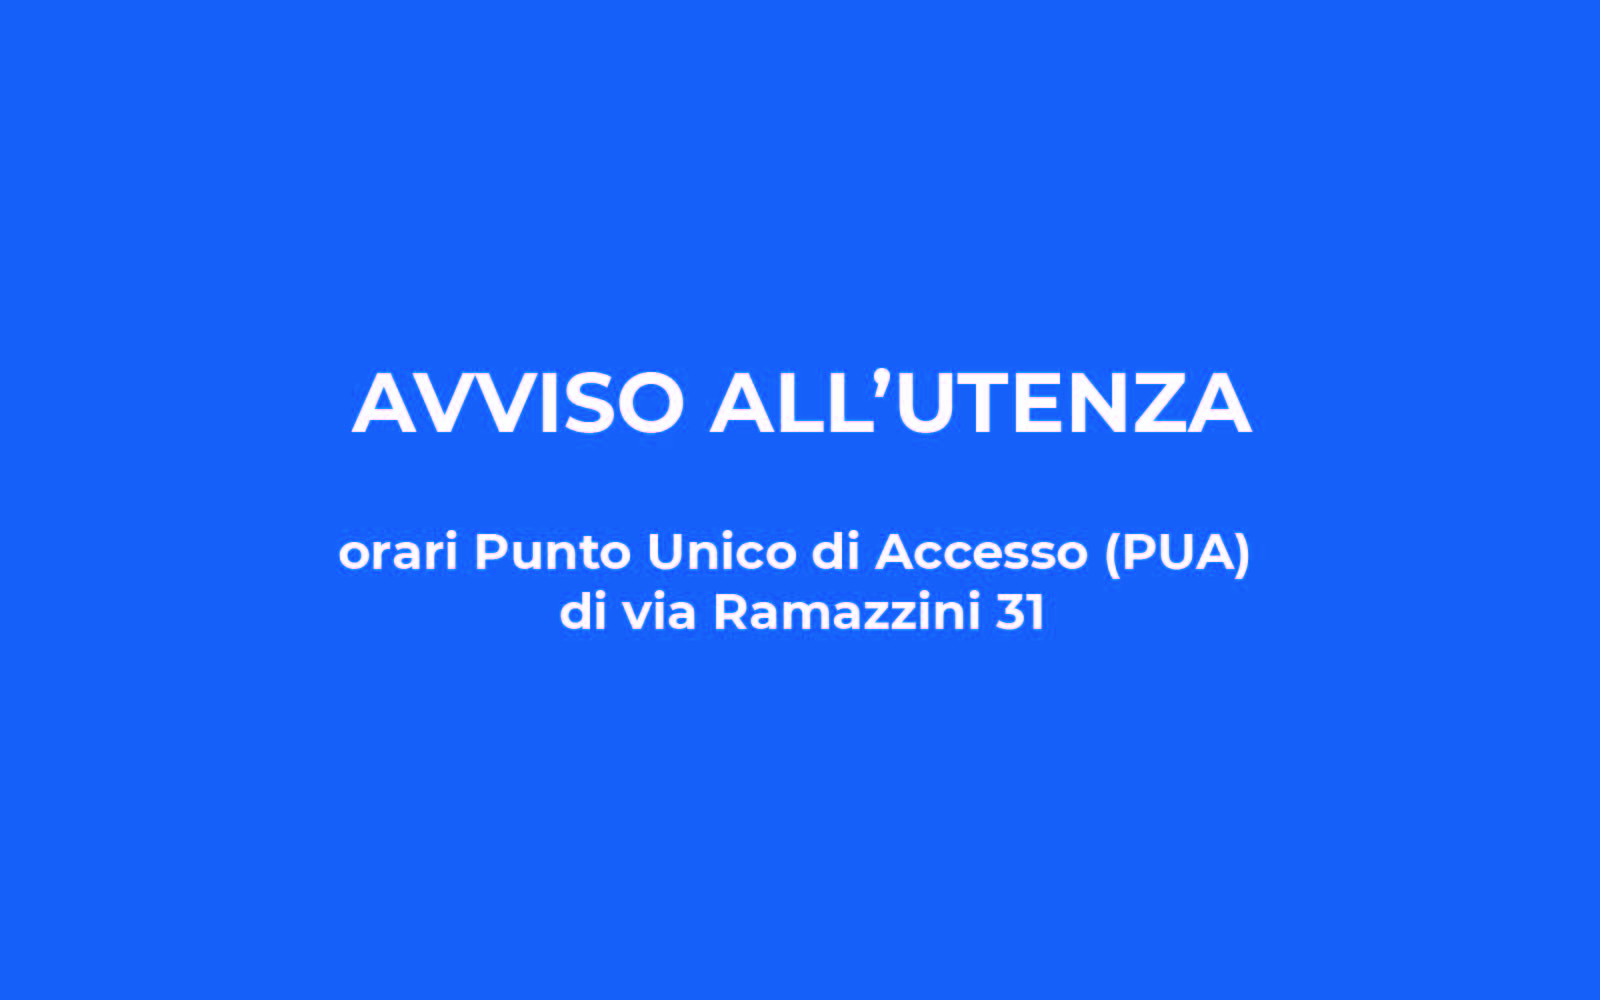 Avviso all’utenza – Orari Punto Unico di Accesso (PUA) di via Ramazzini 31